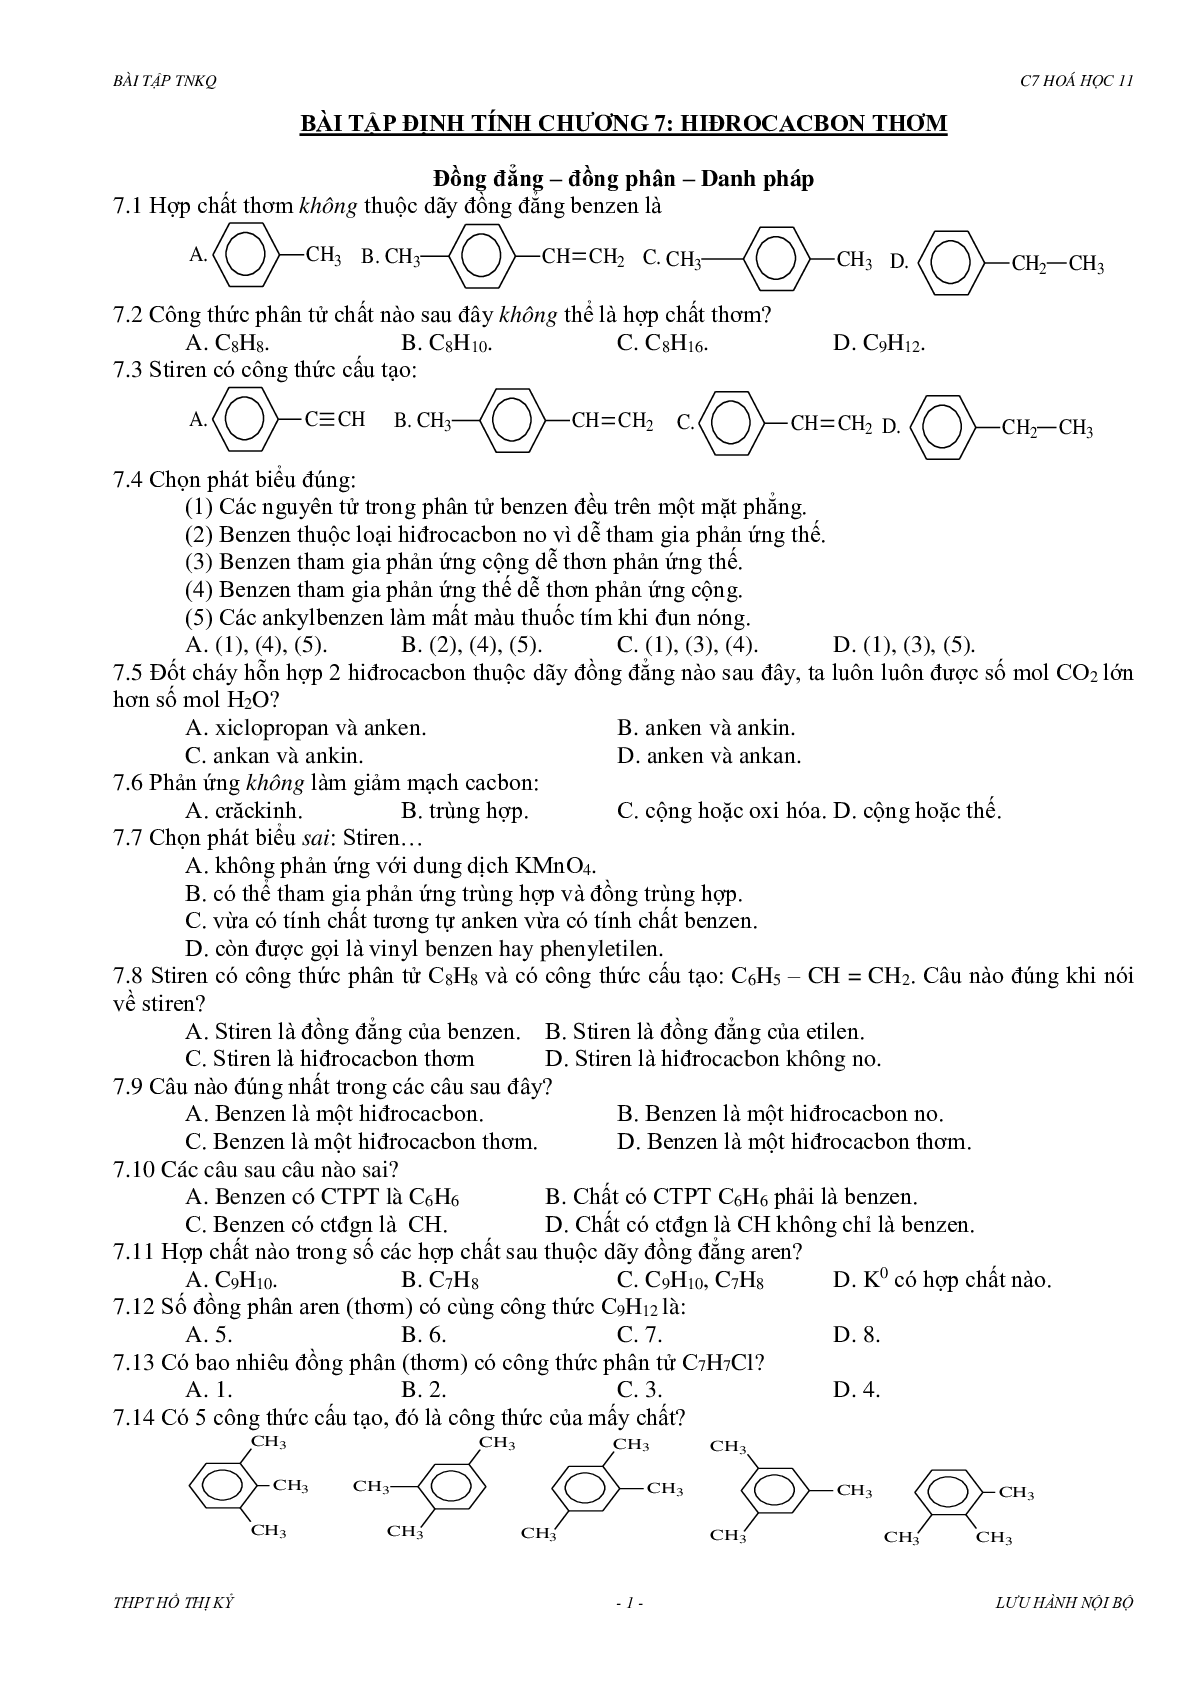 Bài tập về hidrocacbon thơm có đáp án, chọn lọc (trang 1)